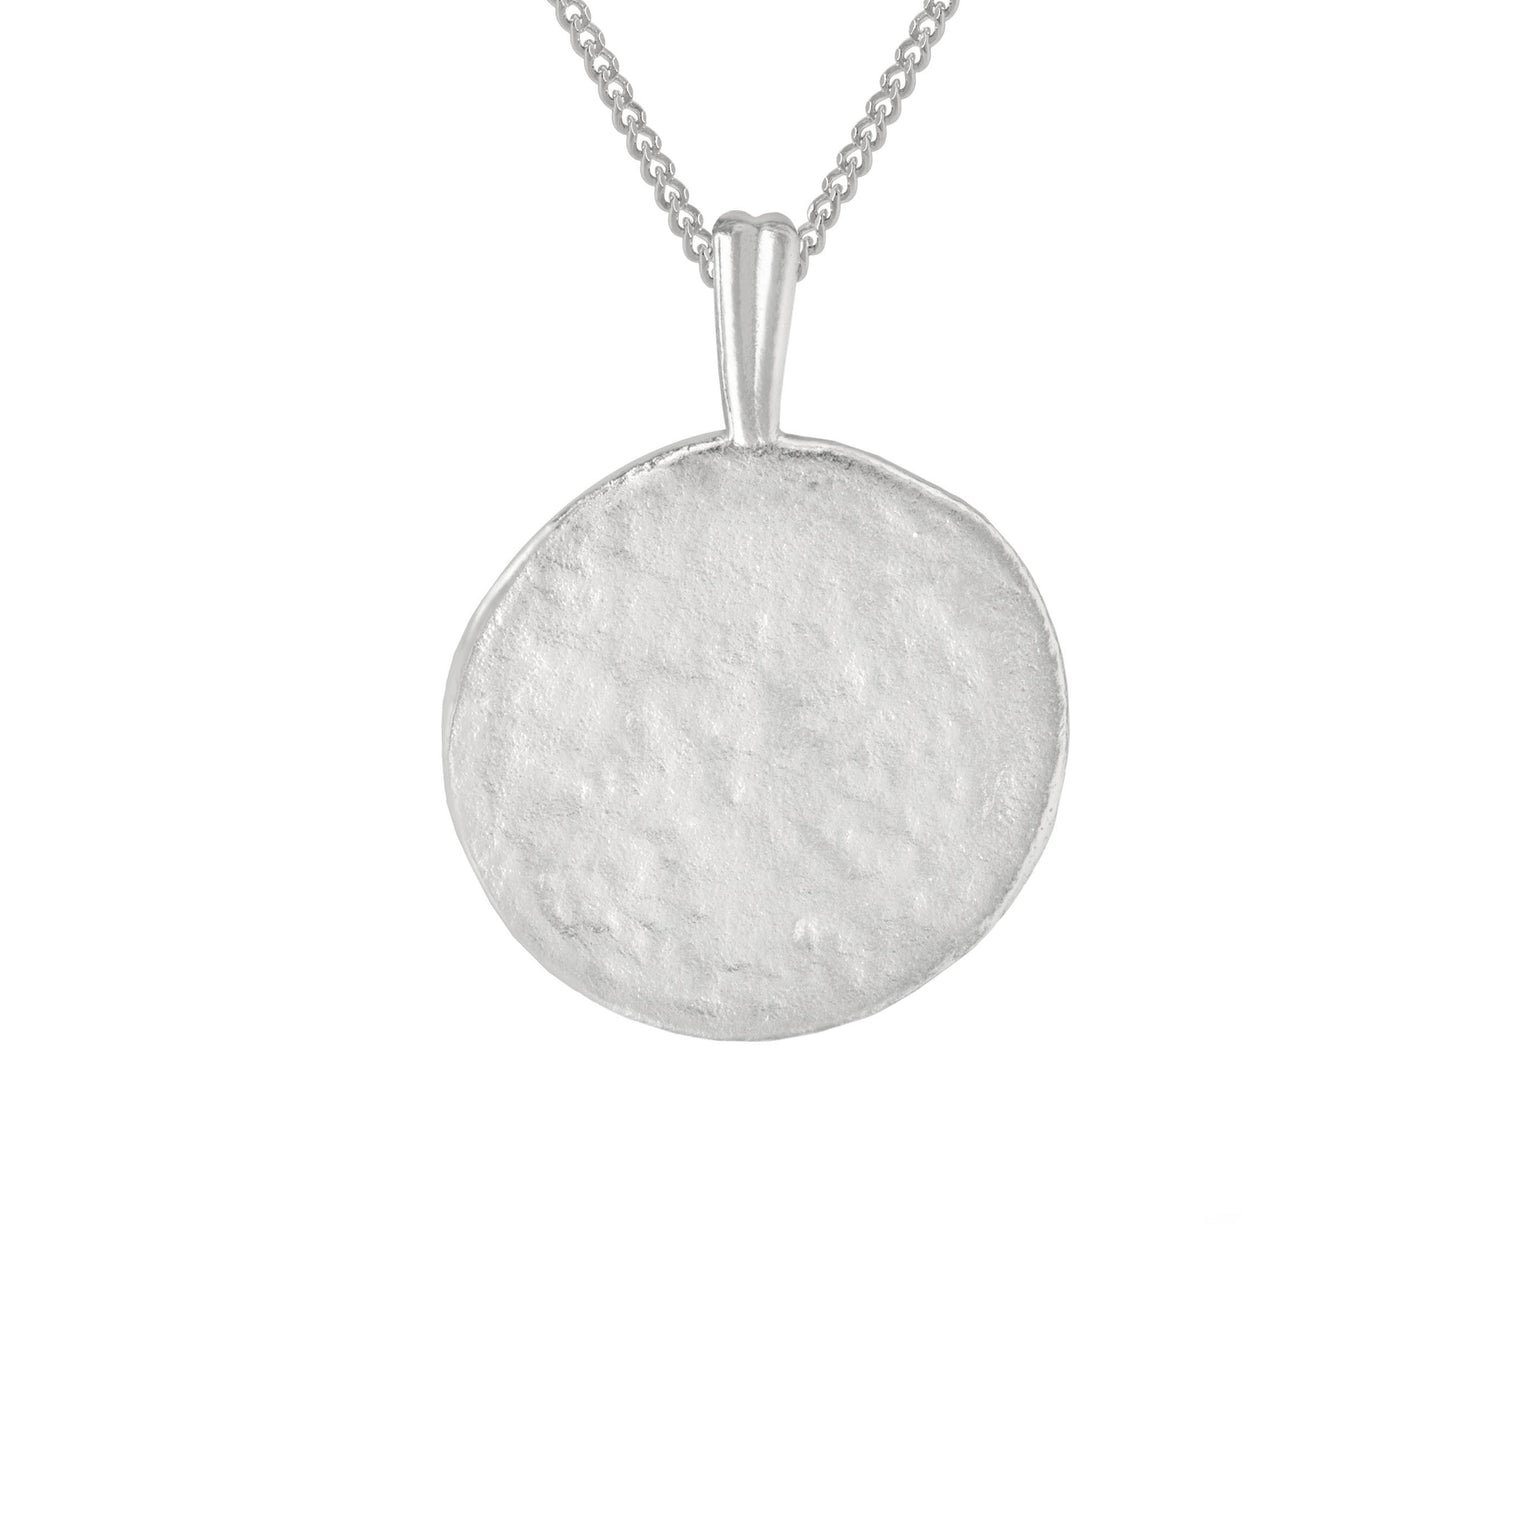 Scorpio Zodiac Pendant Necklace in Silver back of pendant